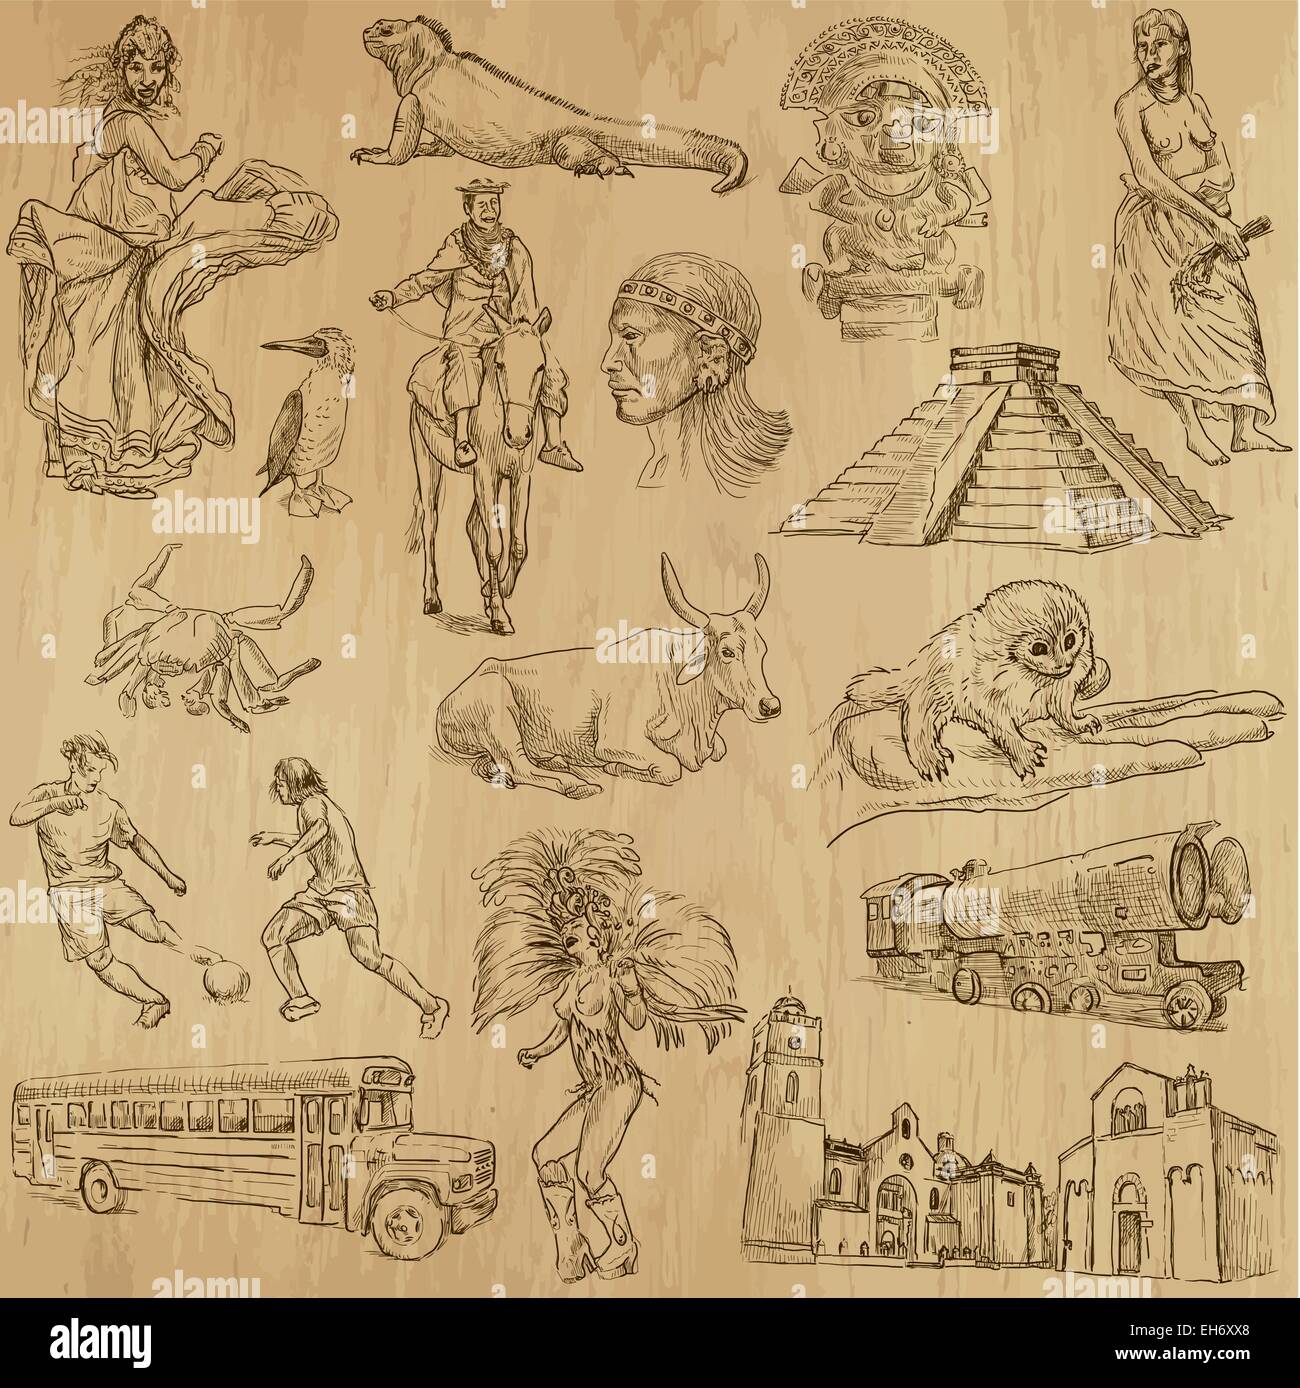 À partir de la série de voyage : AMÉRIQUE DU SUD - une collection d'illustrations faites à la main. Chaque dessin se composent de deux couches de base Illustration de Vecteur